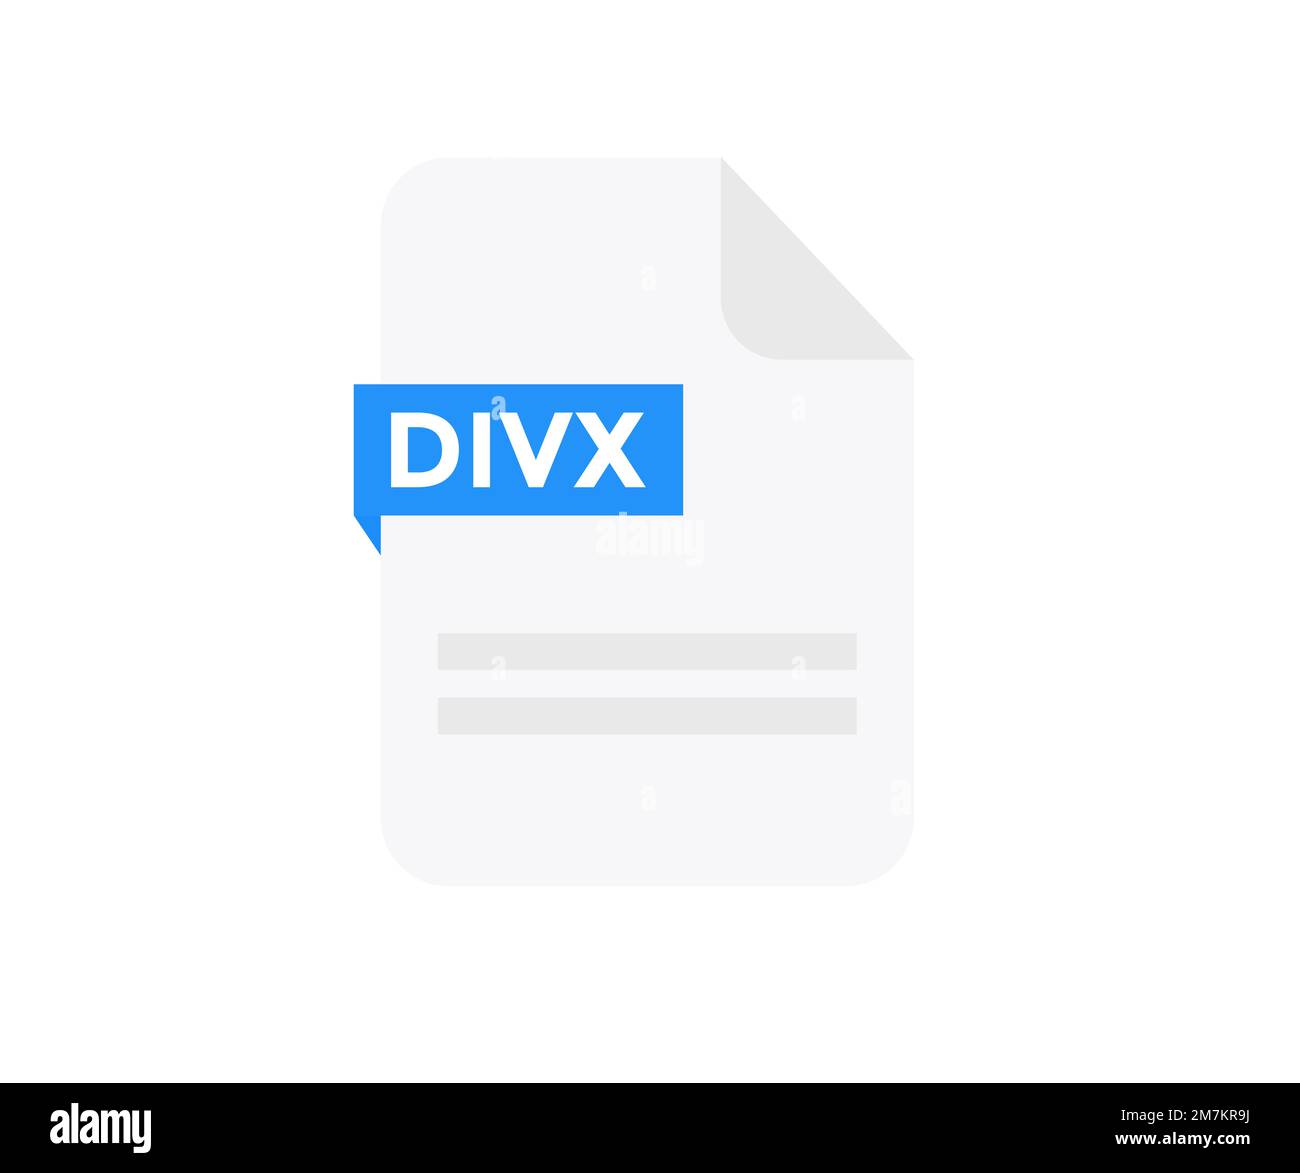 Formato file design del logo DIVX. Icona del documento, Internet, estensione, firma, tipo, presentazione, grafica, applicazione. Elemento per applicazioni, Web. Illustrazione Vettoriale